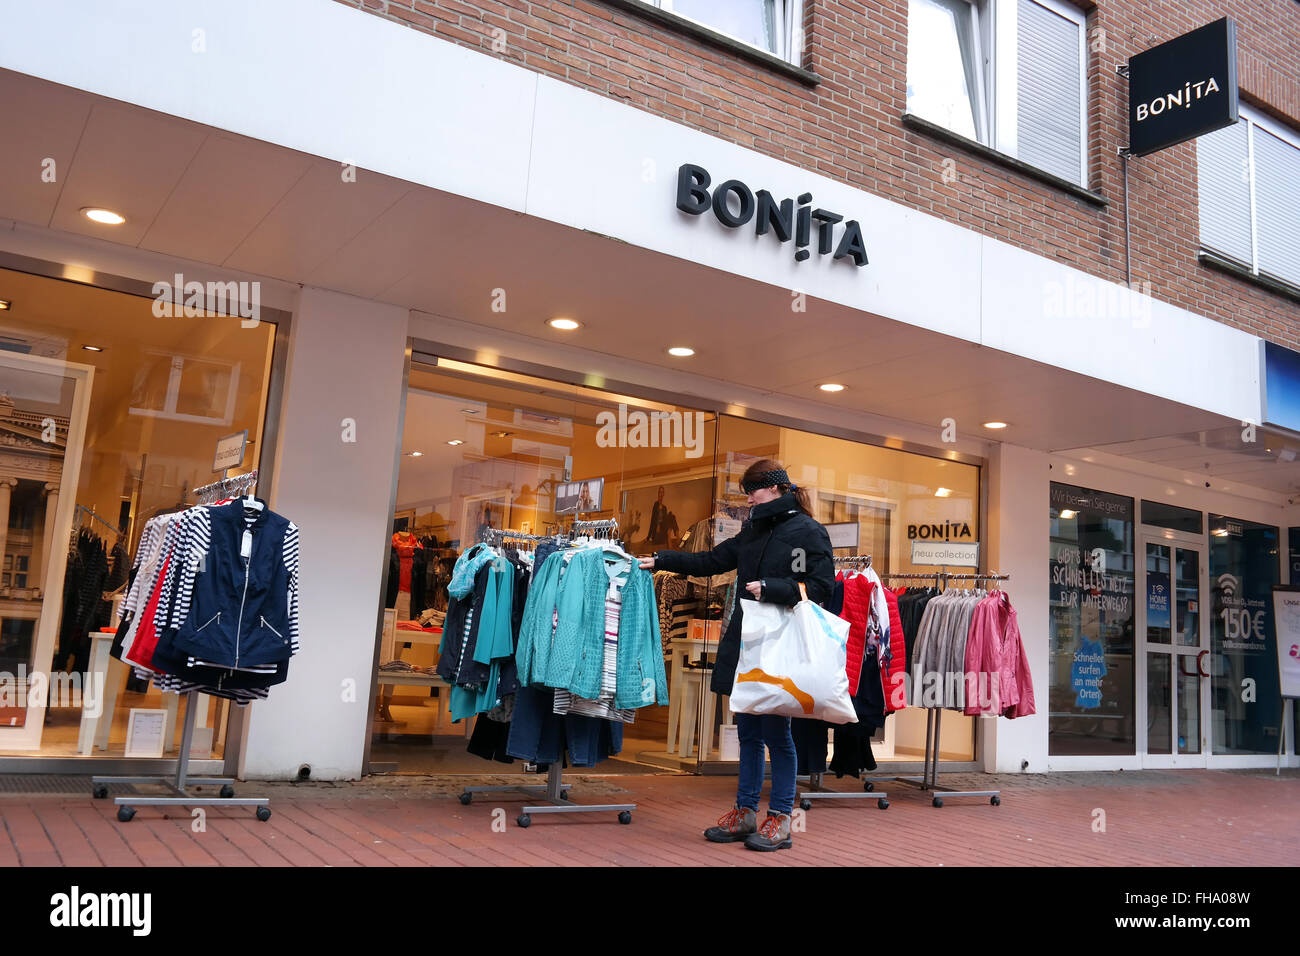 Succursale de Bonita fashion store Banque D'Images